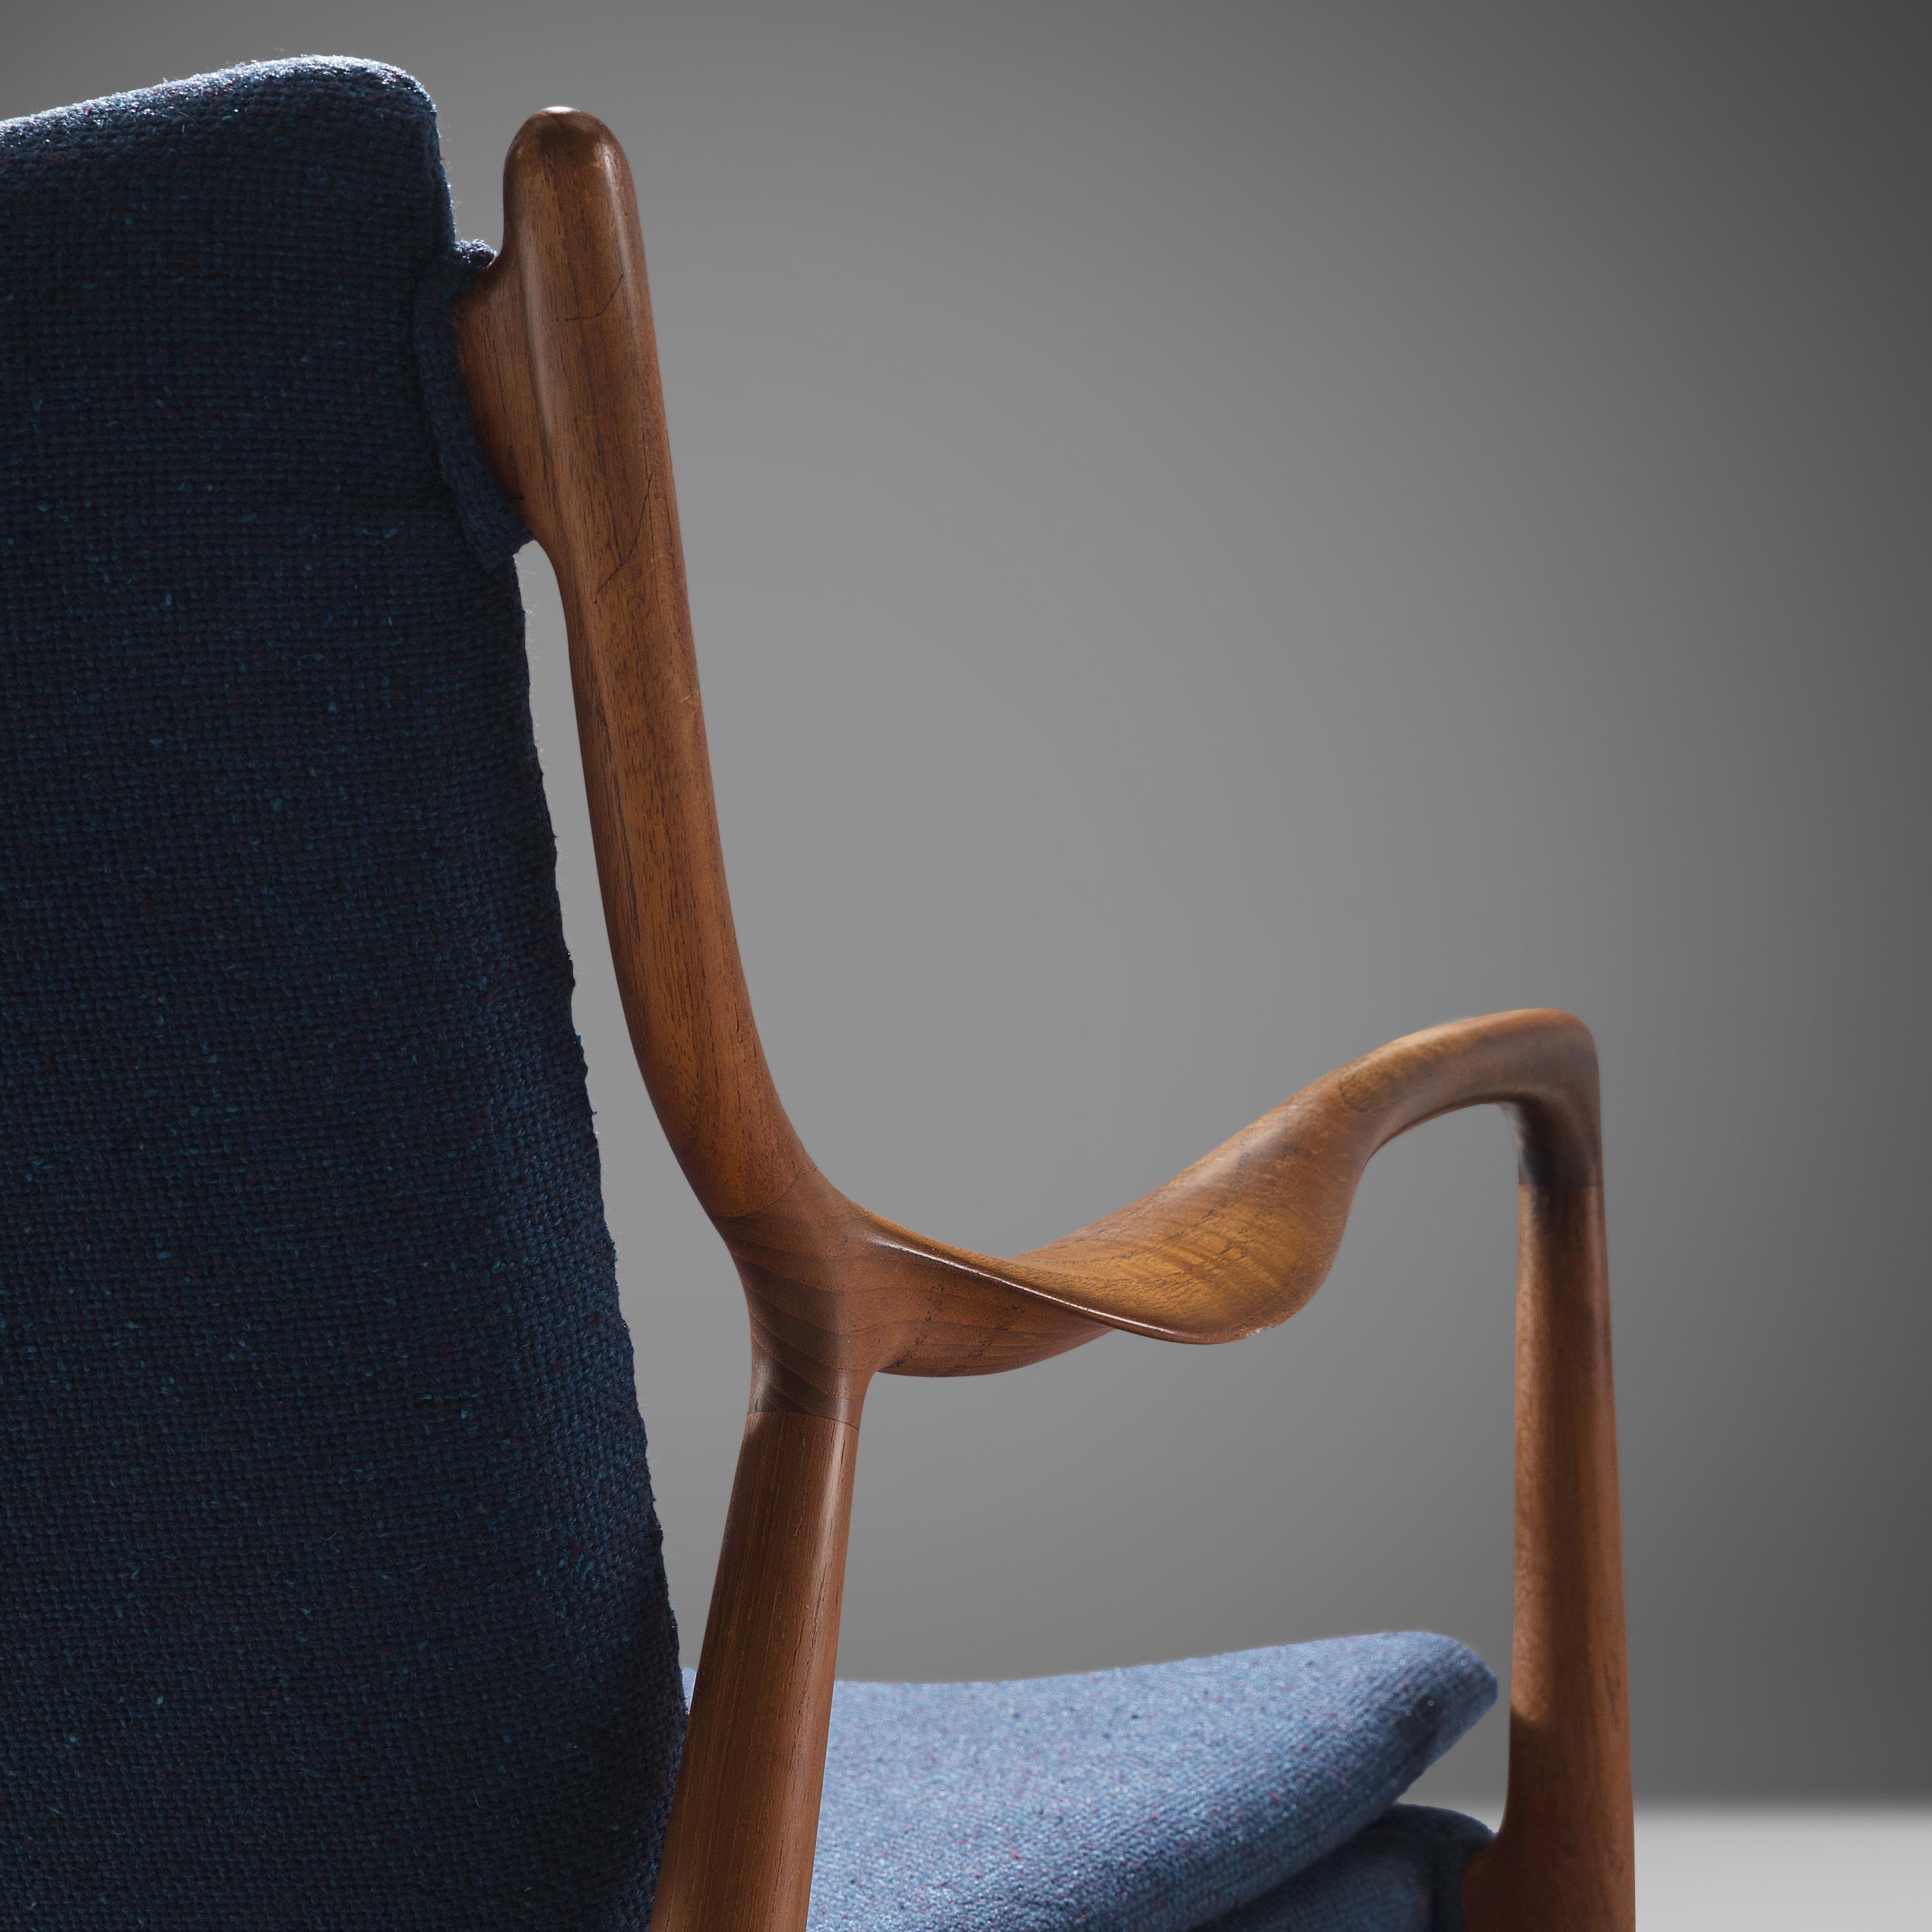 Scandinavian Modern Finn Juhl for Niels Vodder Armchair 'NV 45' in Teak and Blue Fabric Upholstery